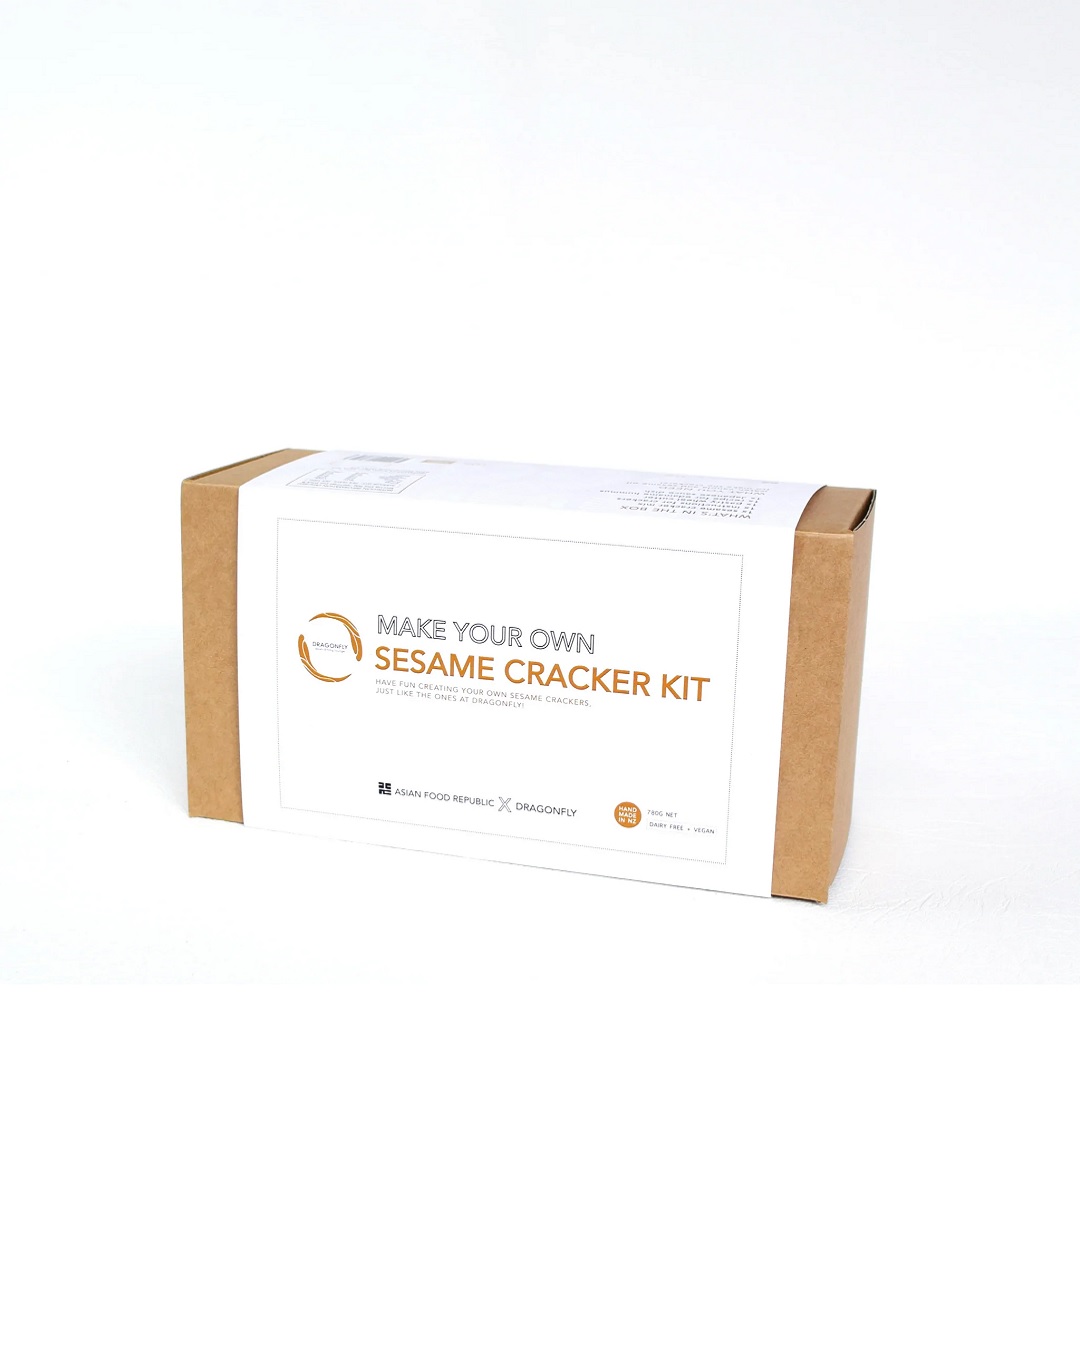 Sesame cracker kit